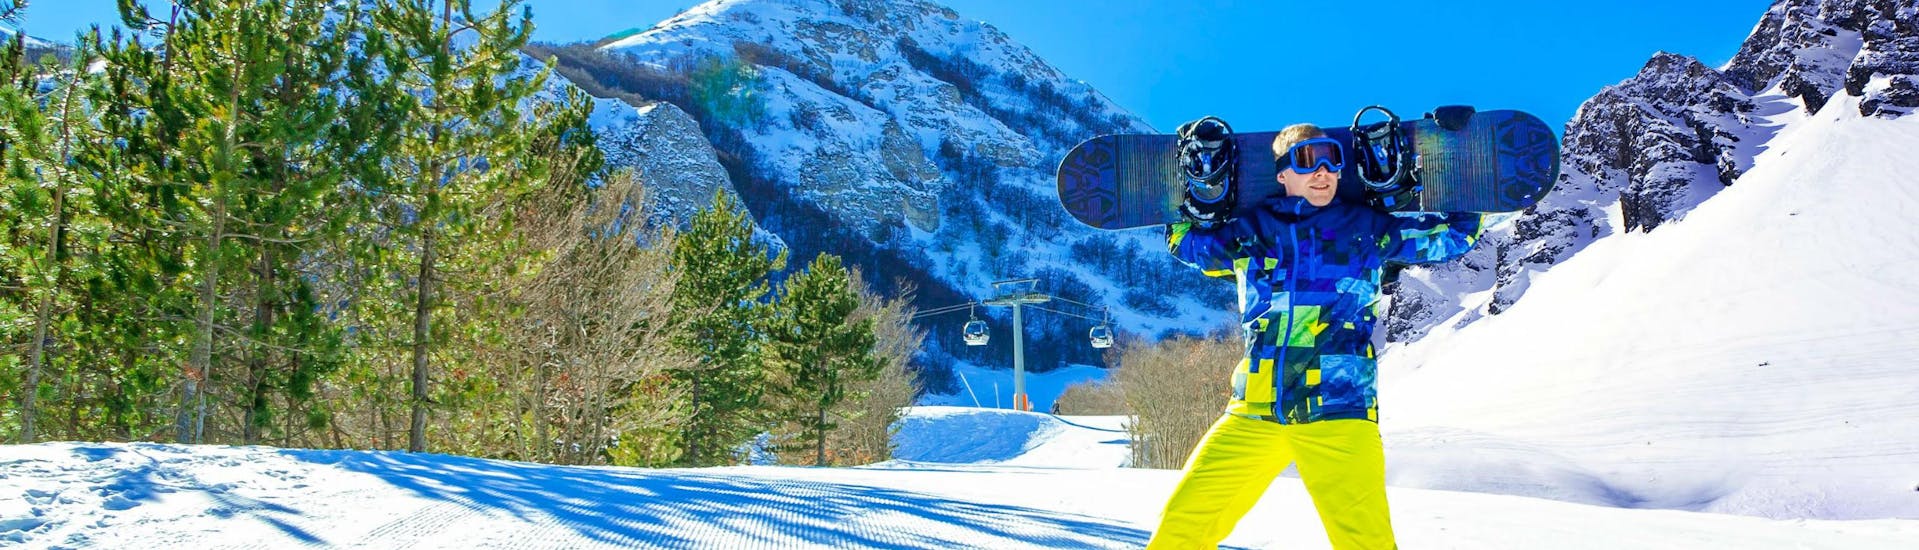 Ein Snowboarder ponigen Skipiste im italienischen Abrusiert auf einer sonzzo, wo viele Skikurse von den örtlichen Skischulen angeboten werden.